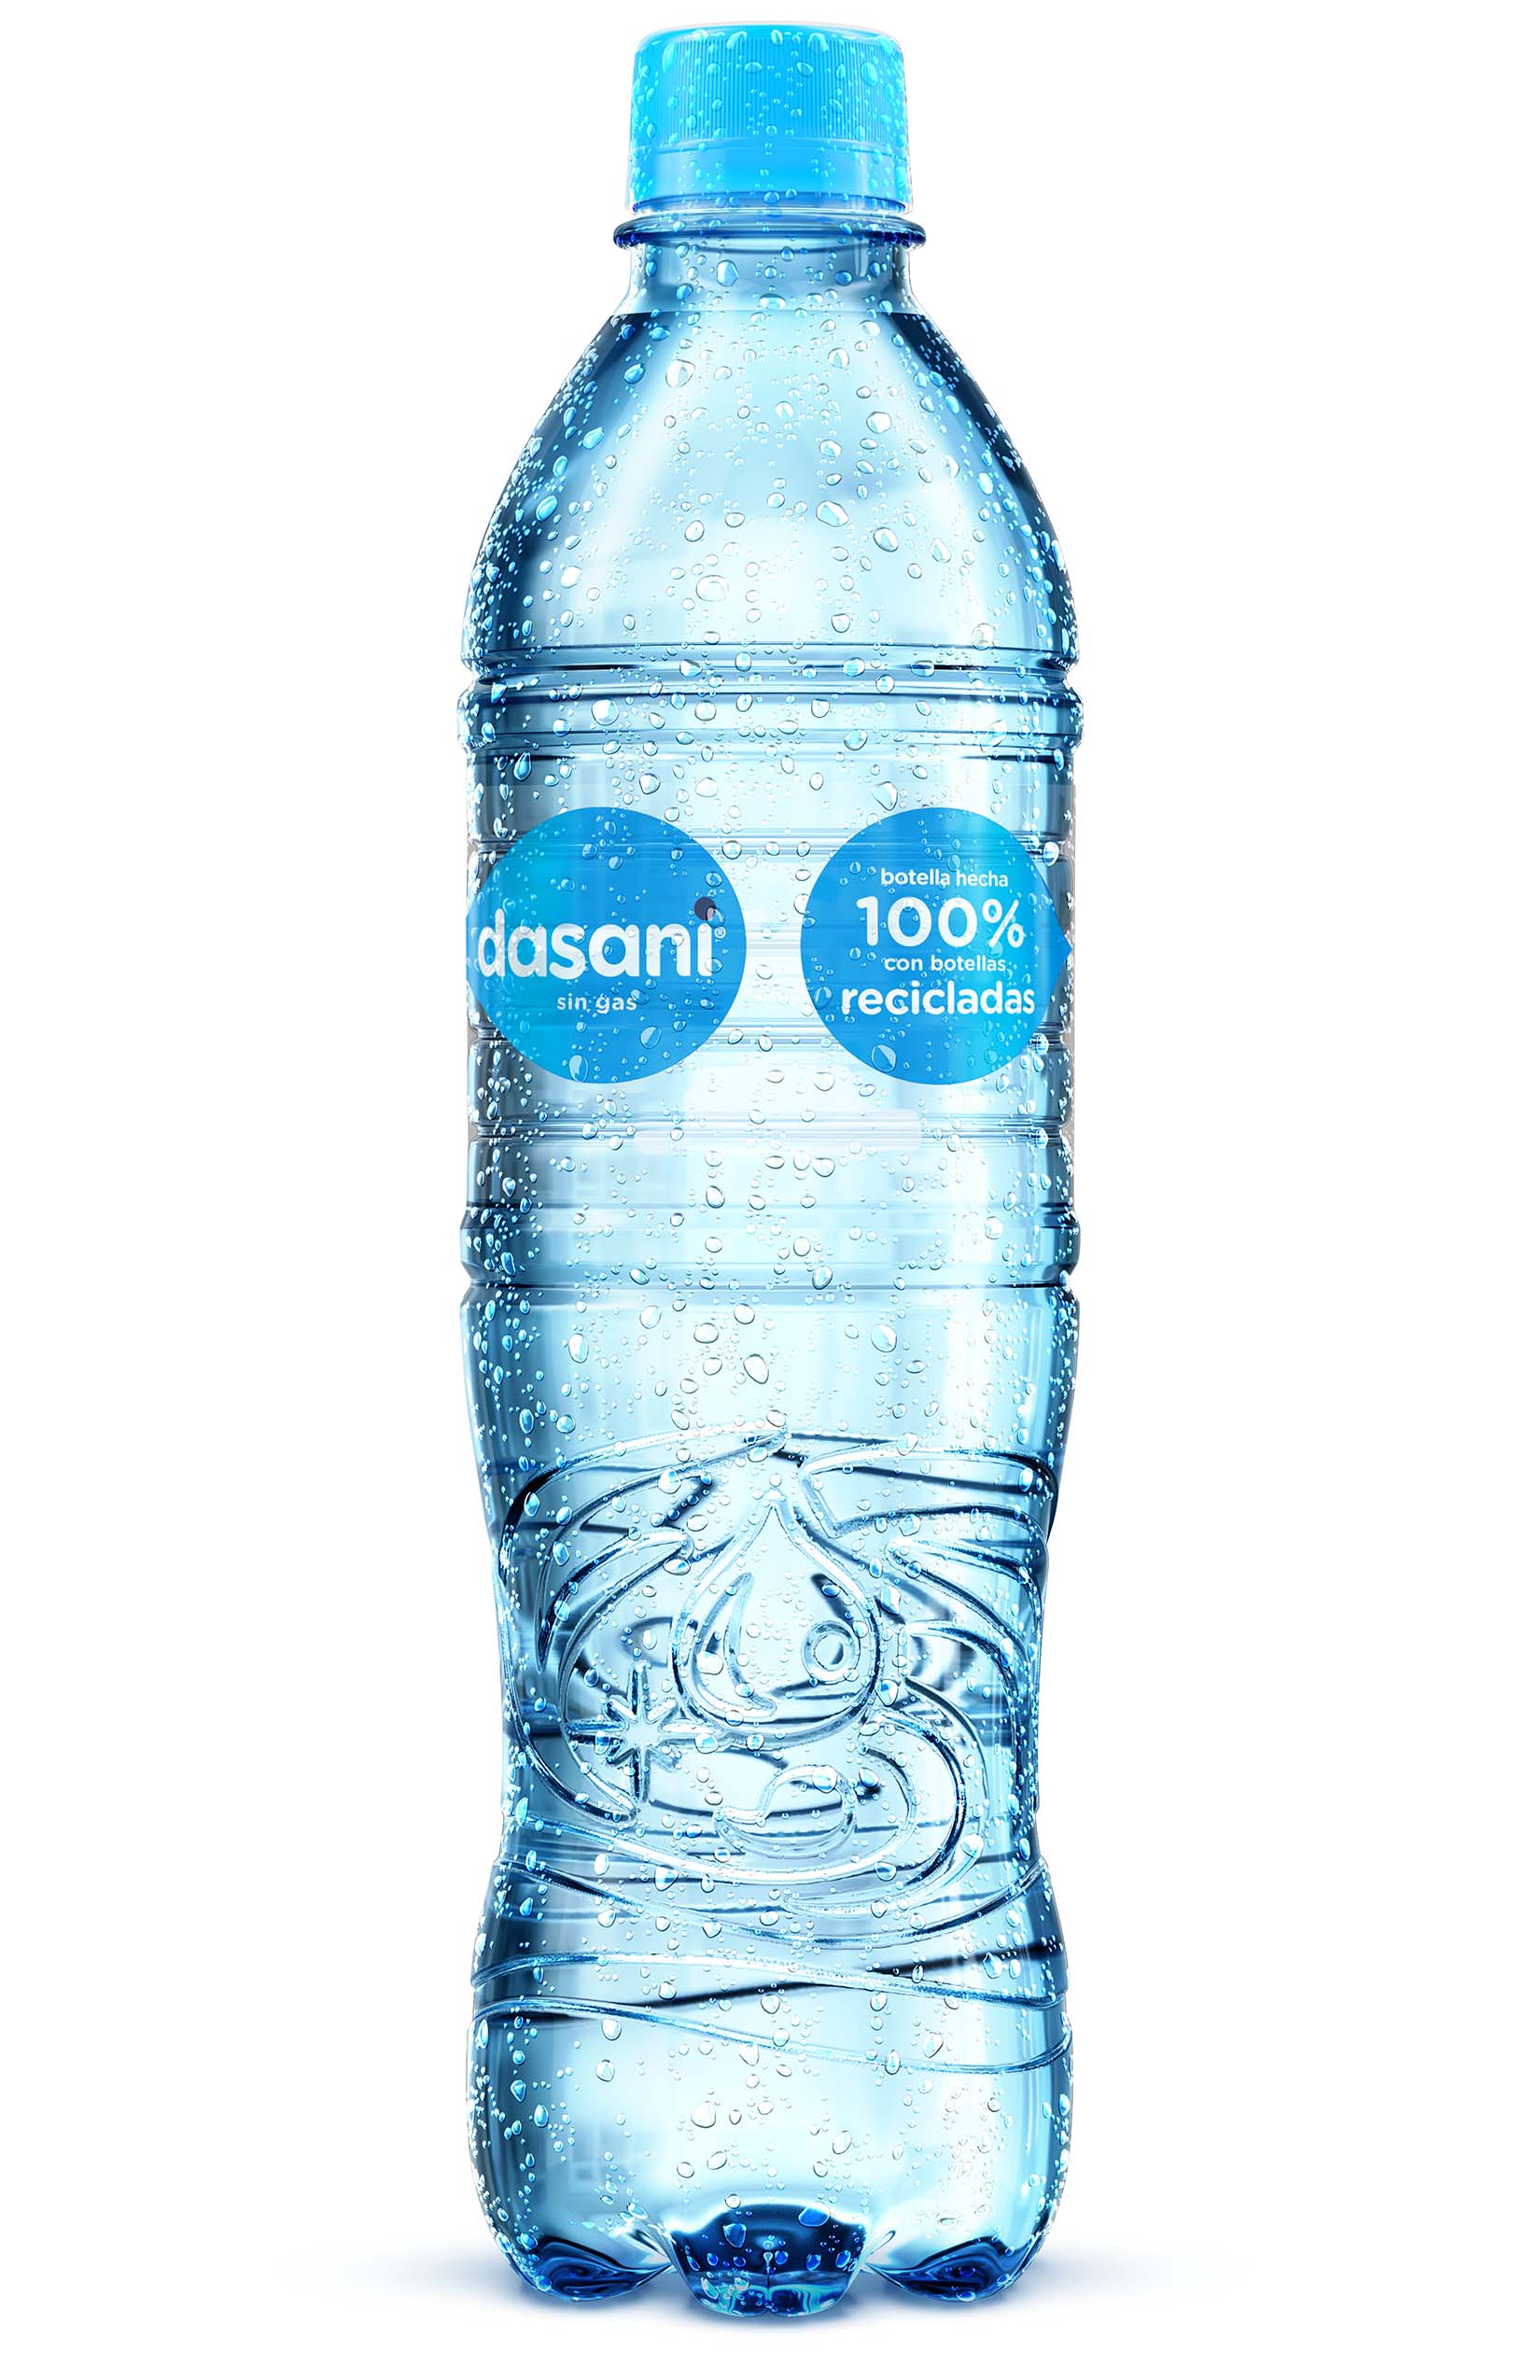 Botella de Dasani Sin Gas 600mL